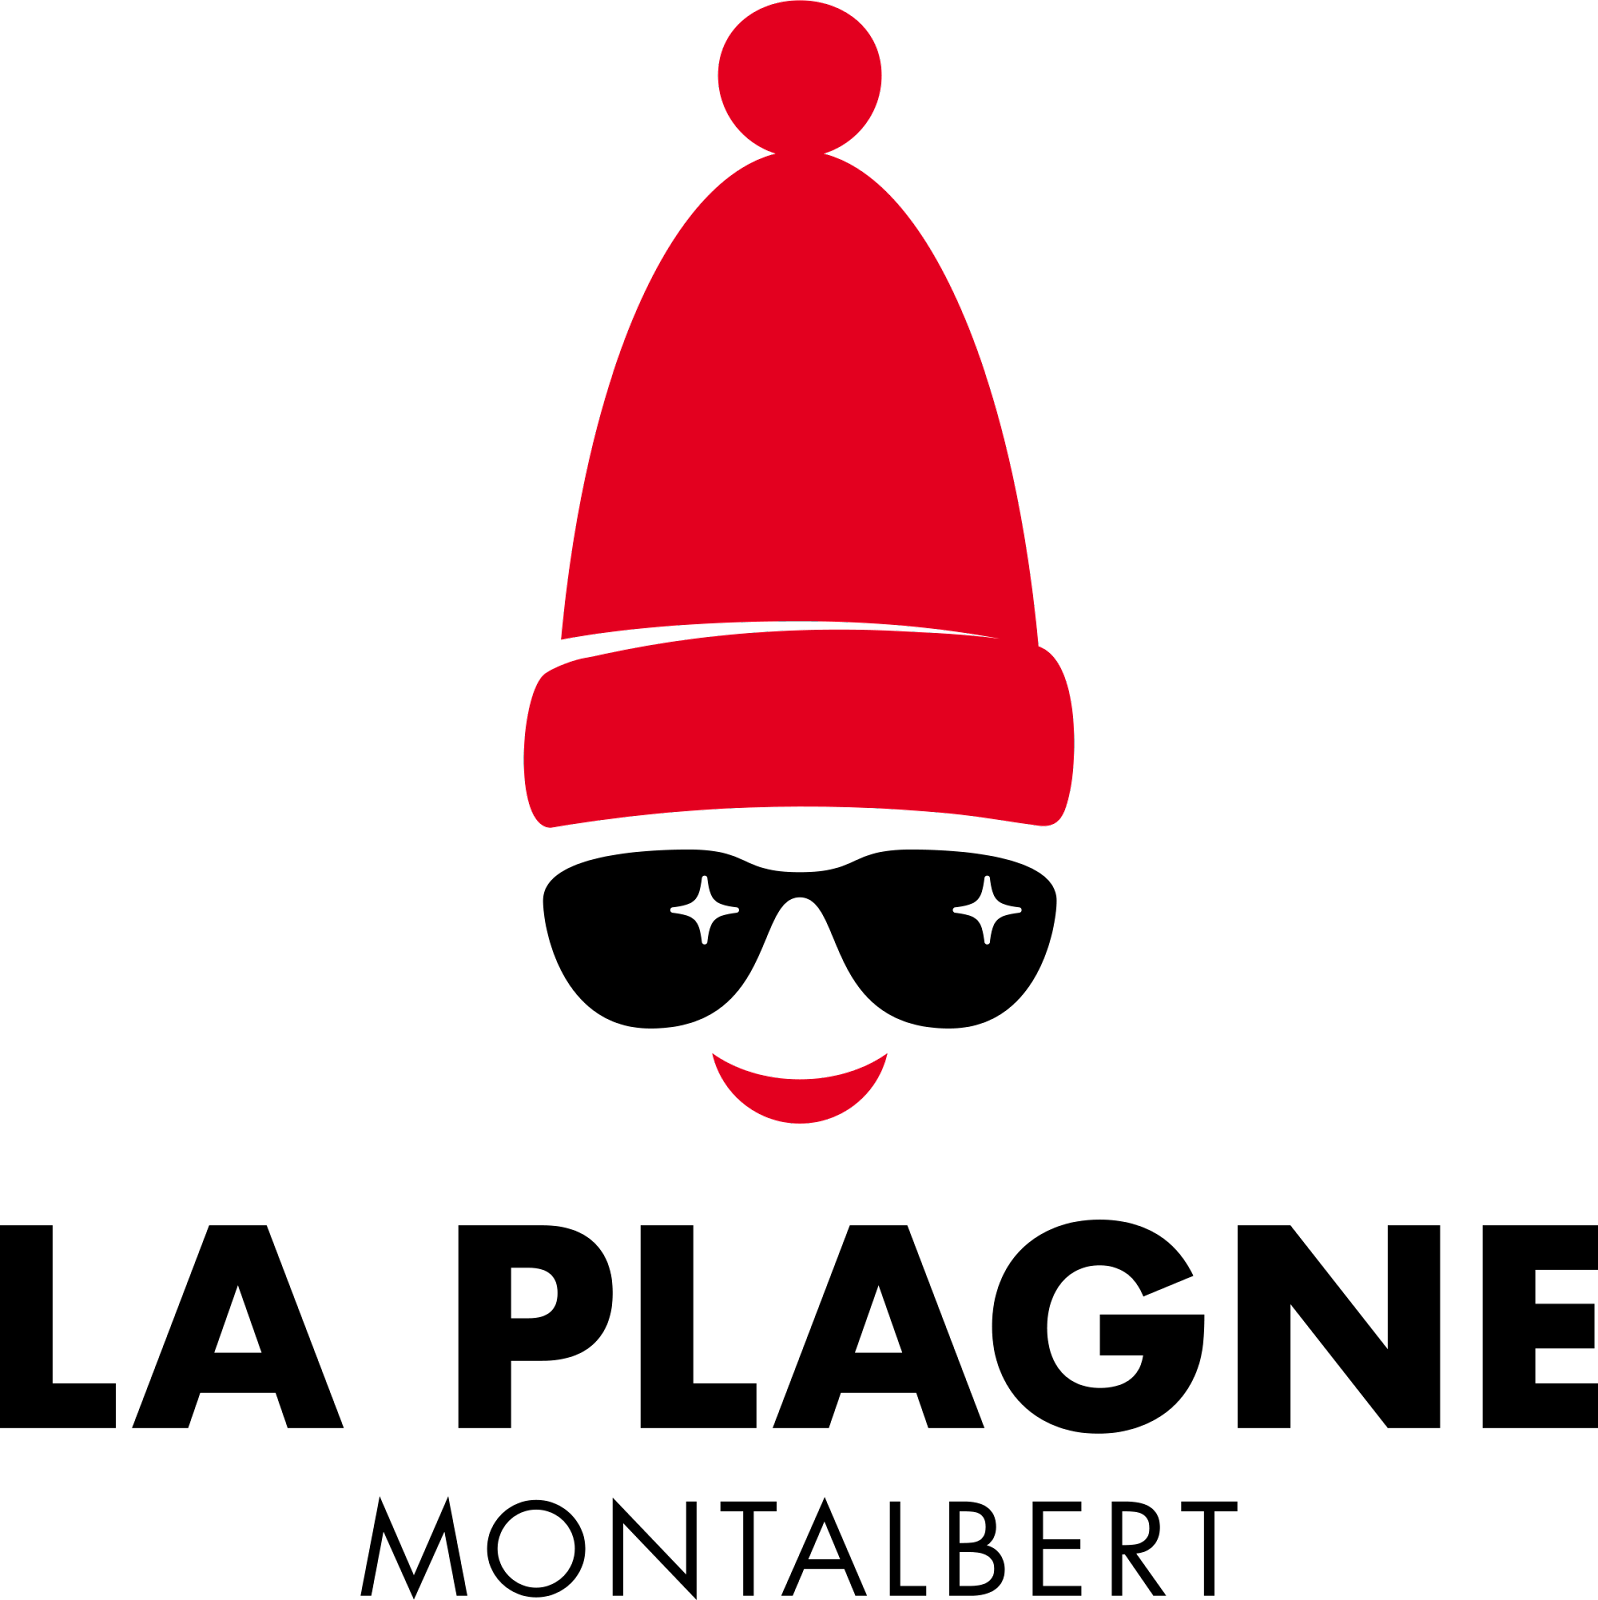 Une image contenant silhouette, bouche d’incendie, parapluie

Description générée automatiquement